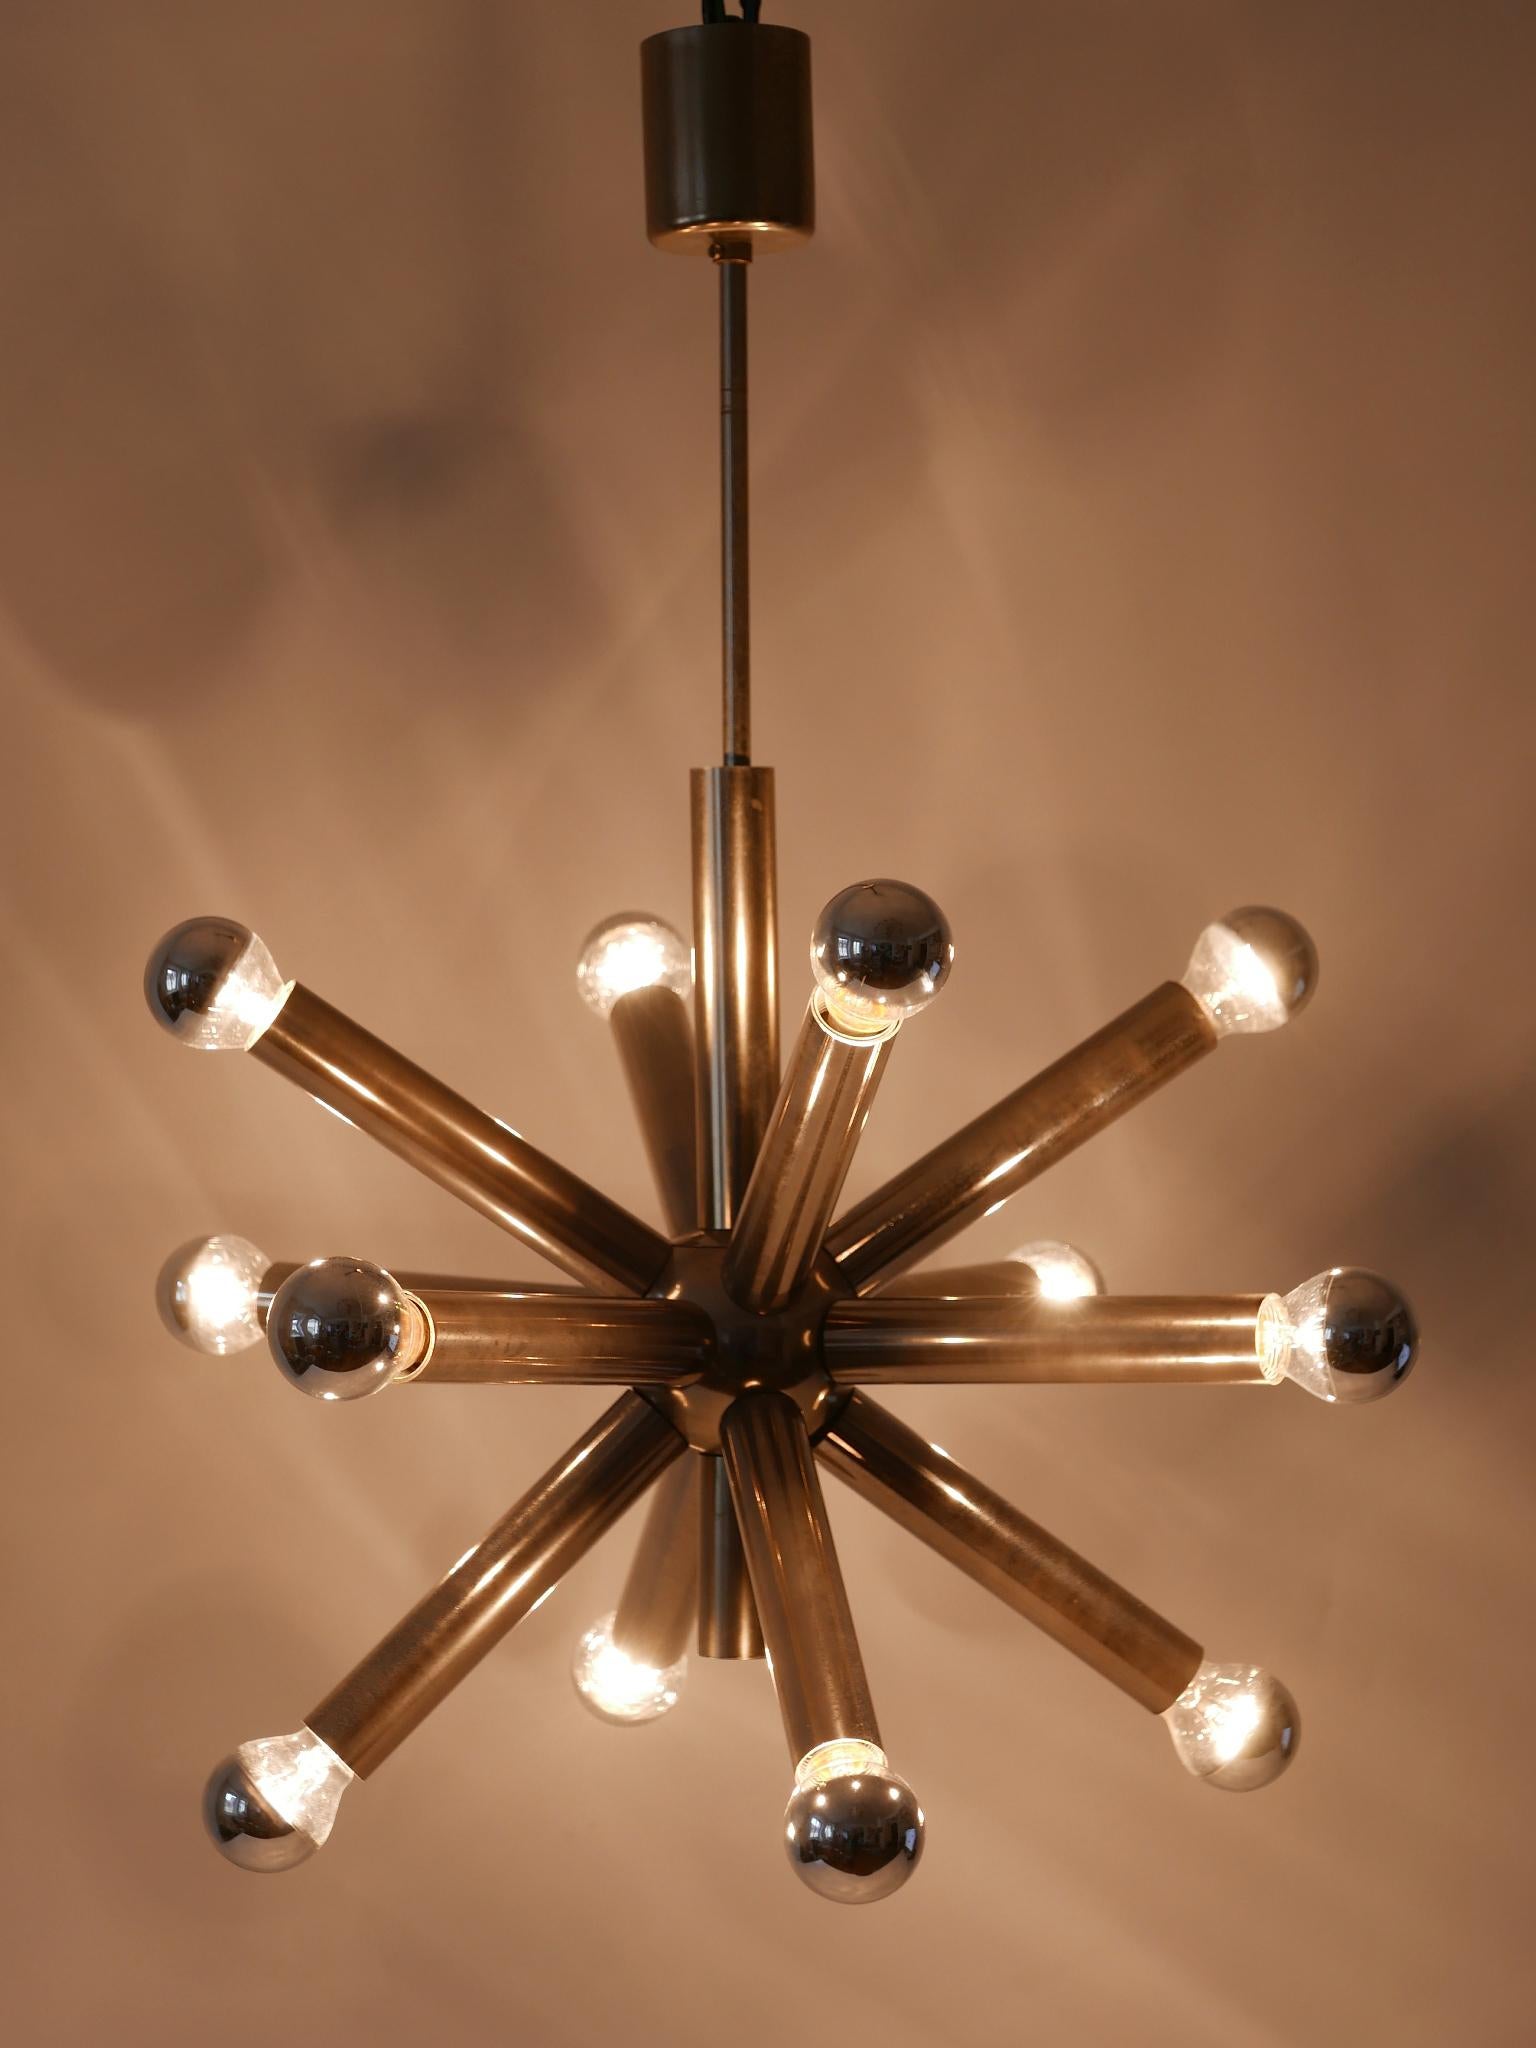 Superbe et élégant lustre ou lampe à suspension Sputnik à 12 bras de lumière, de style moderne du milieu du siècle. Conçu et fabriqué dans les années 1960, en Allemagne.

Réalisé en laiton et métal nickelé, le lustre ou la lampe suspendue nécessite